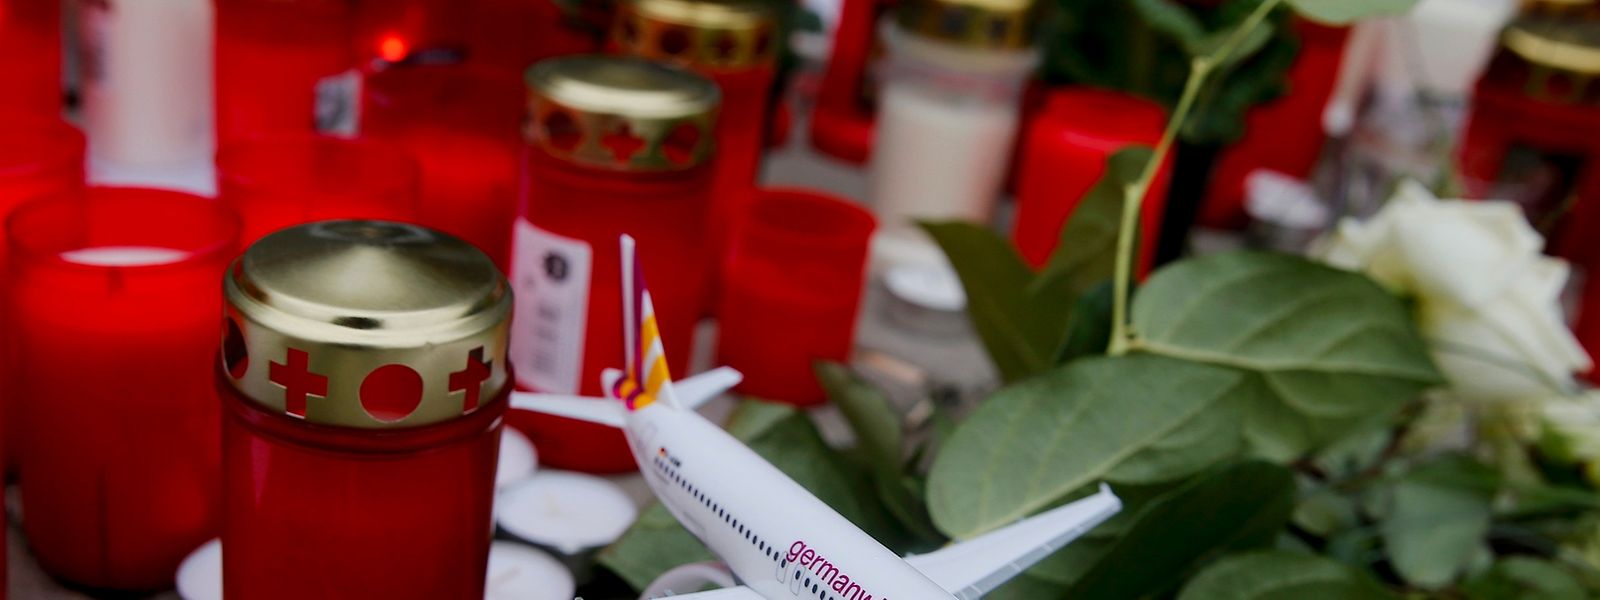 Bei dem absichtlich herbeigeführten Absturz einer Germanwings-Maschine im März 2015 kamen 150 Menschen ums Leben.